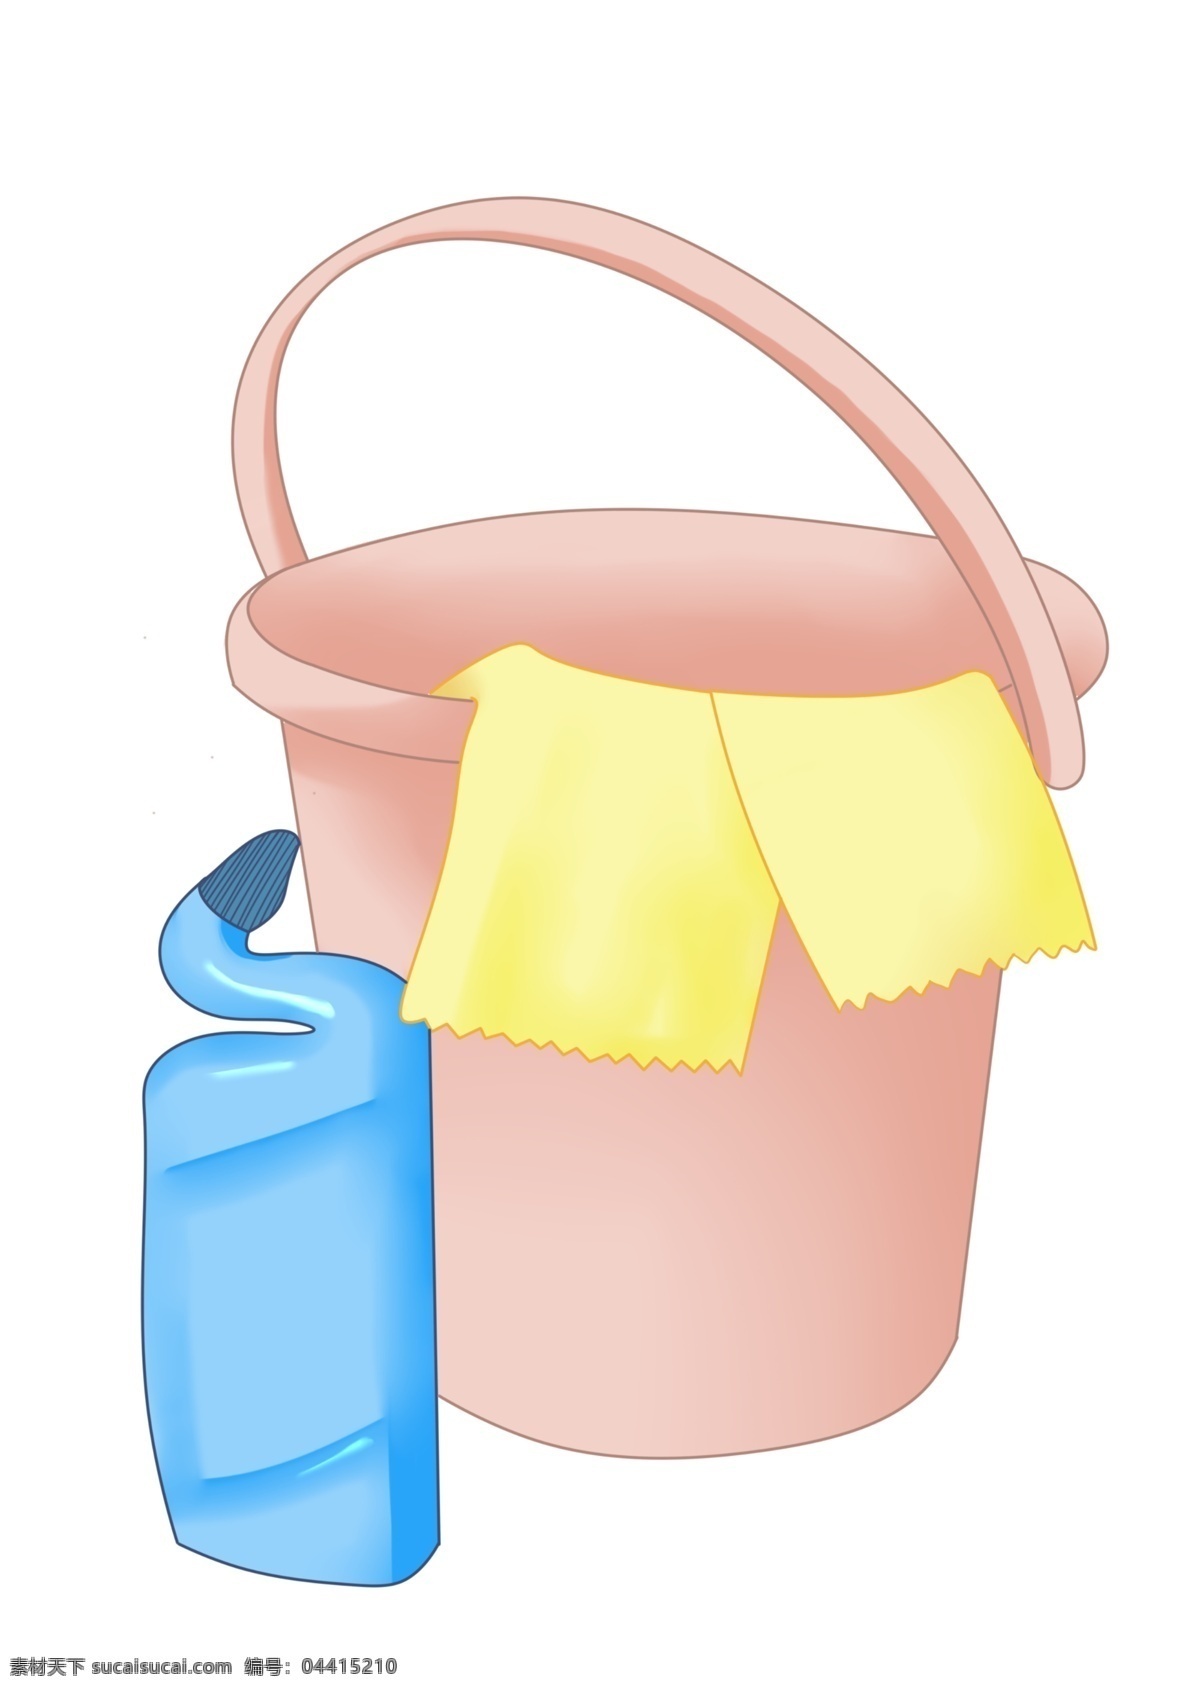 世界 卫生日 清洁工具 黄色抹布 粉色水桶 蓝色 瓶装 清洁剂 世界卫生日 打扫卫生 清洁卫生